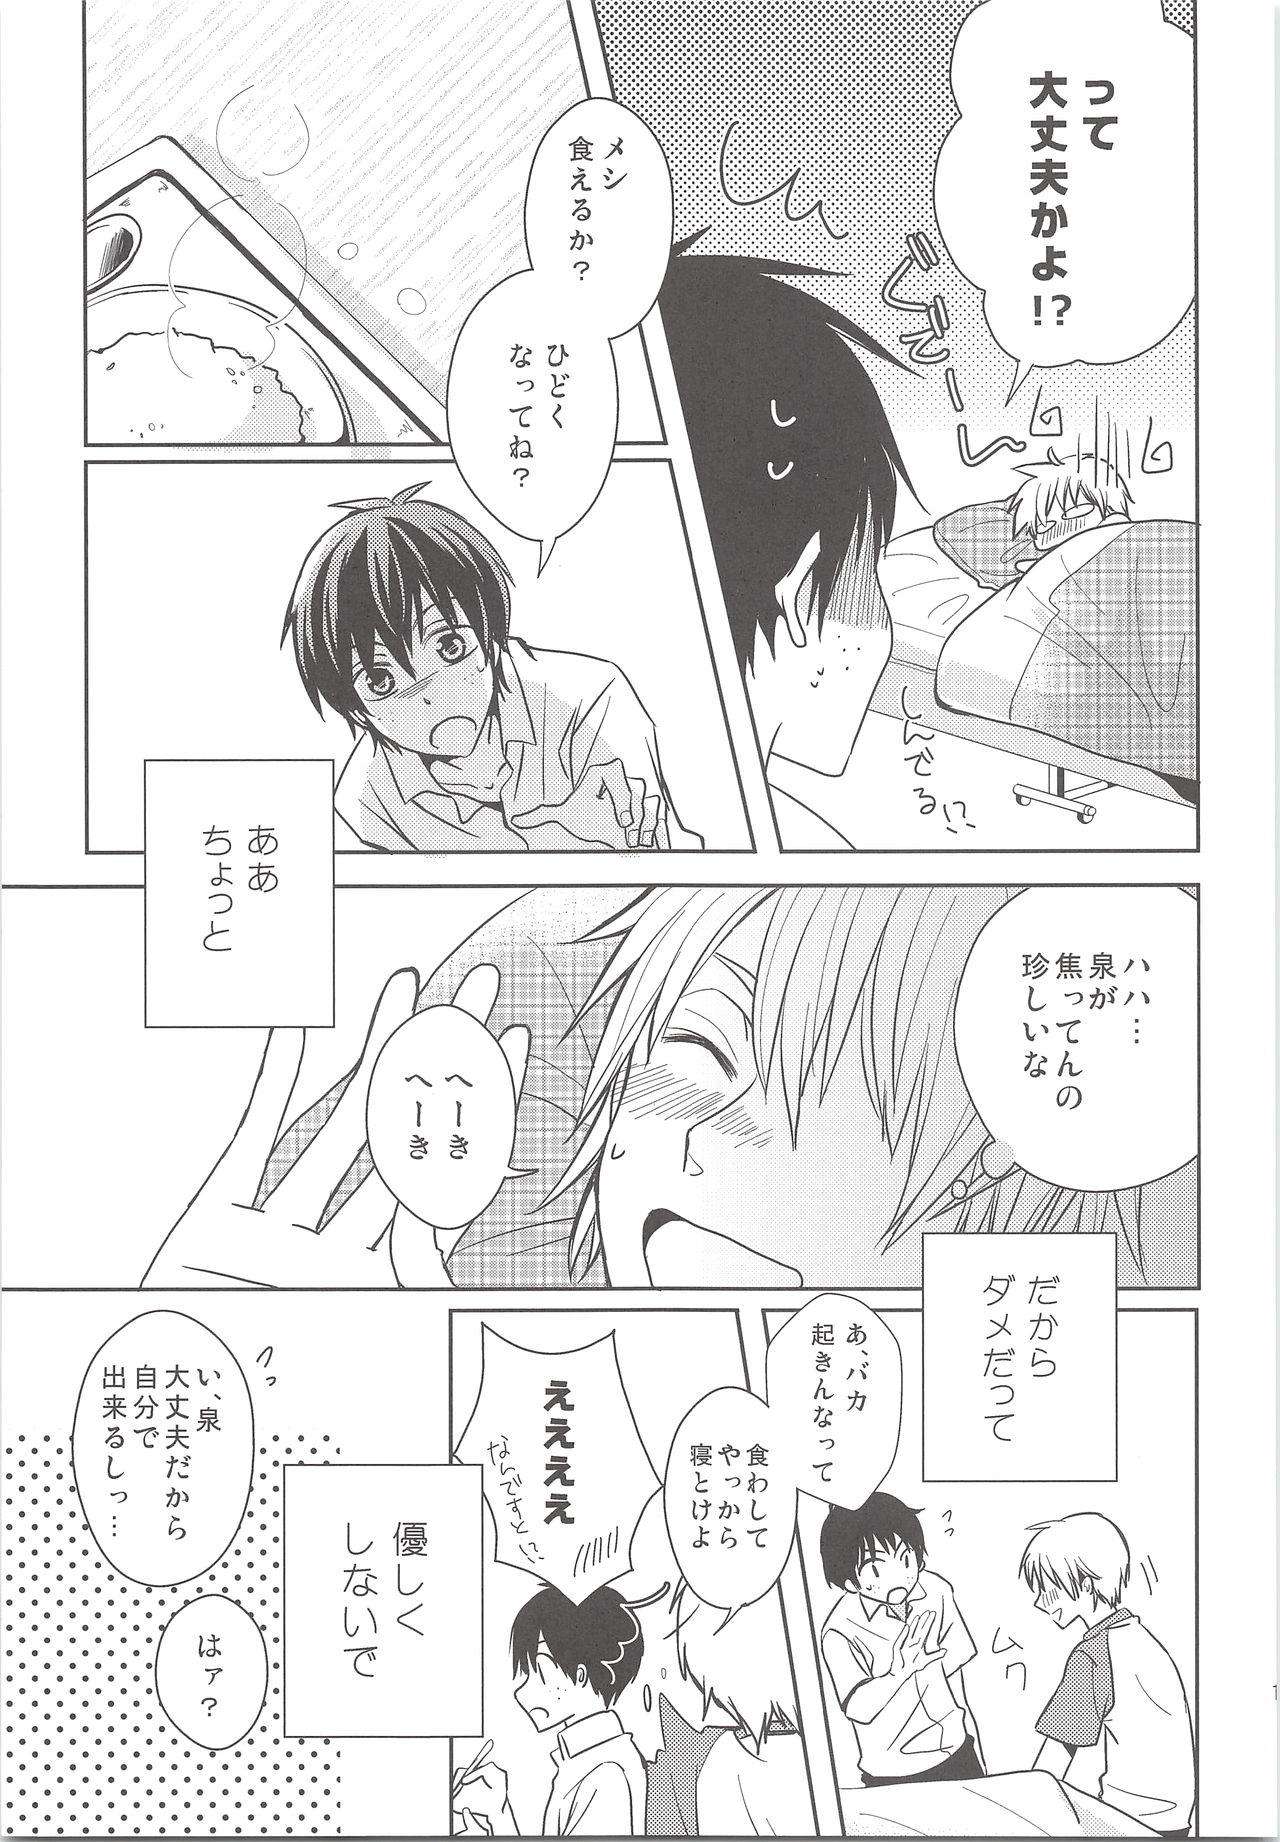 Fresh Natsu Kaze wa Baka ga Hiku! - Ookiku furikabutte 8teen - Page 10